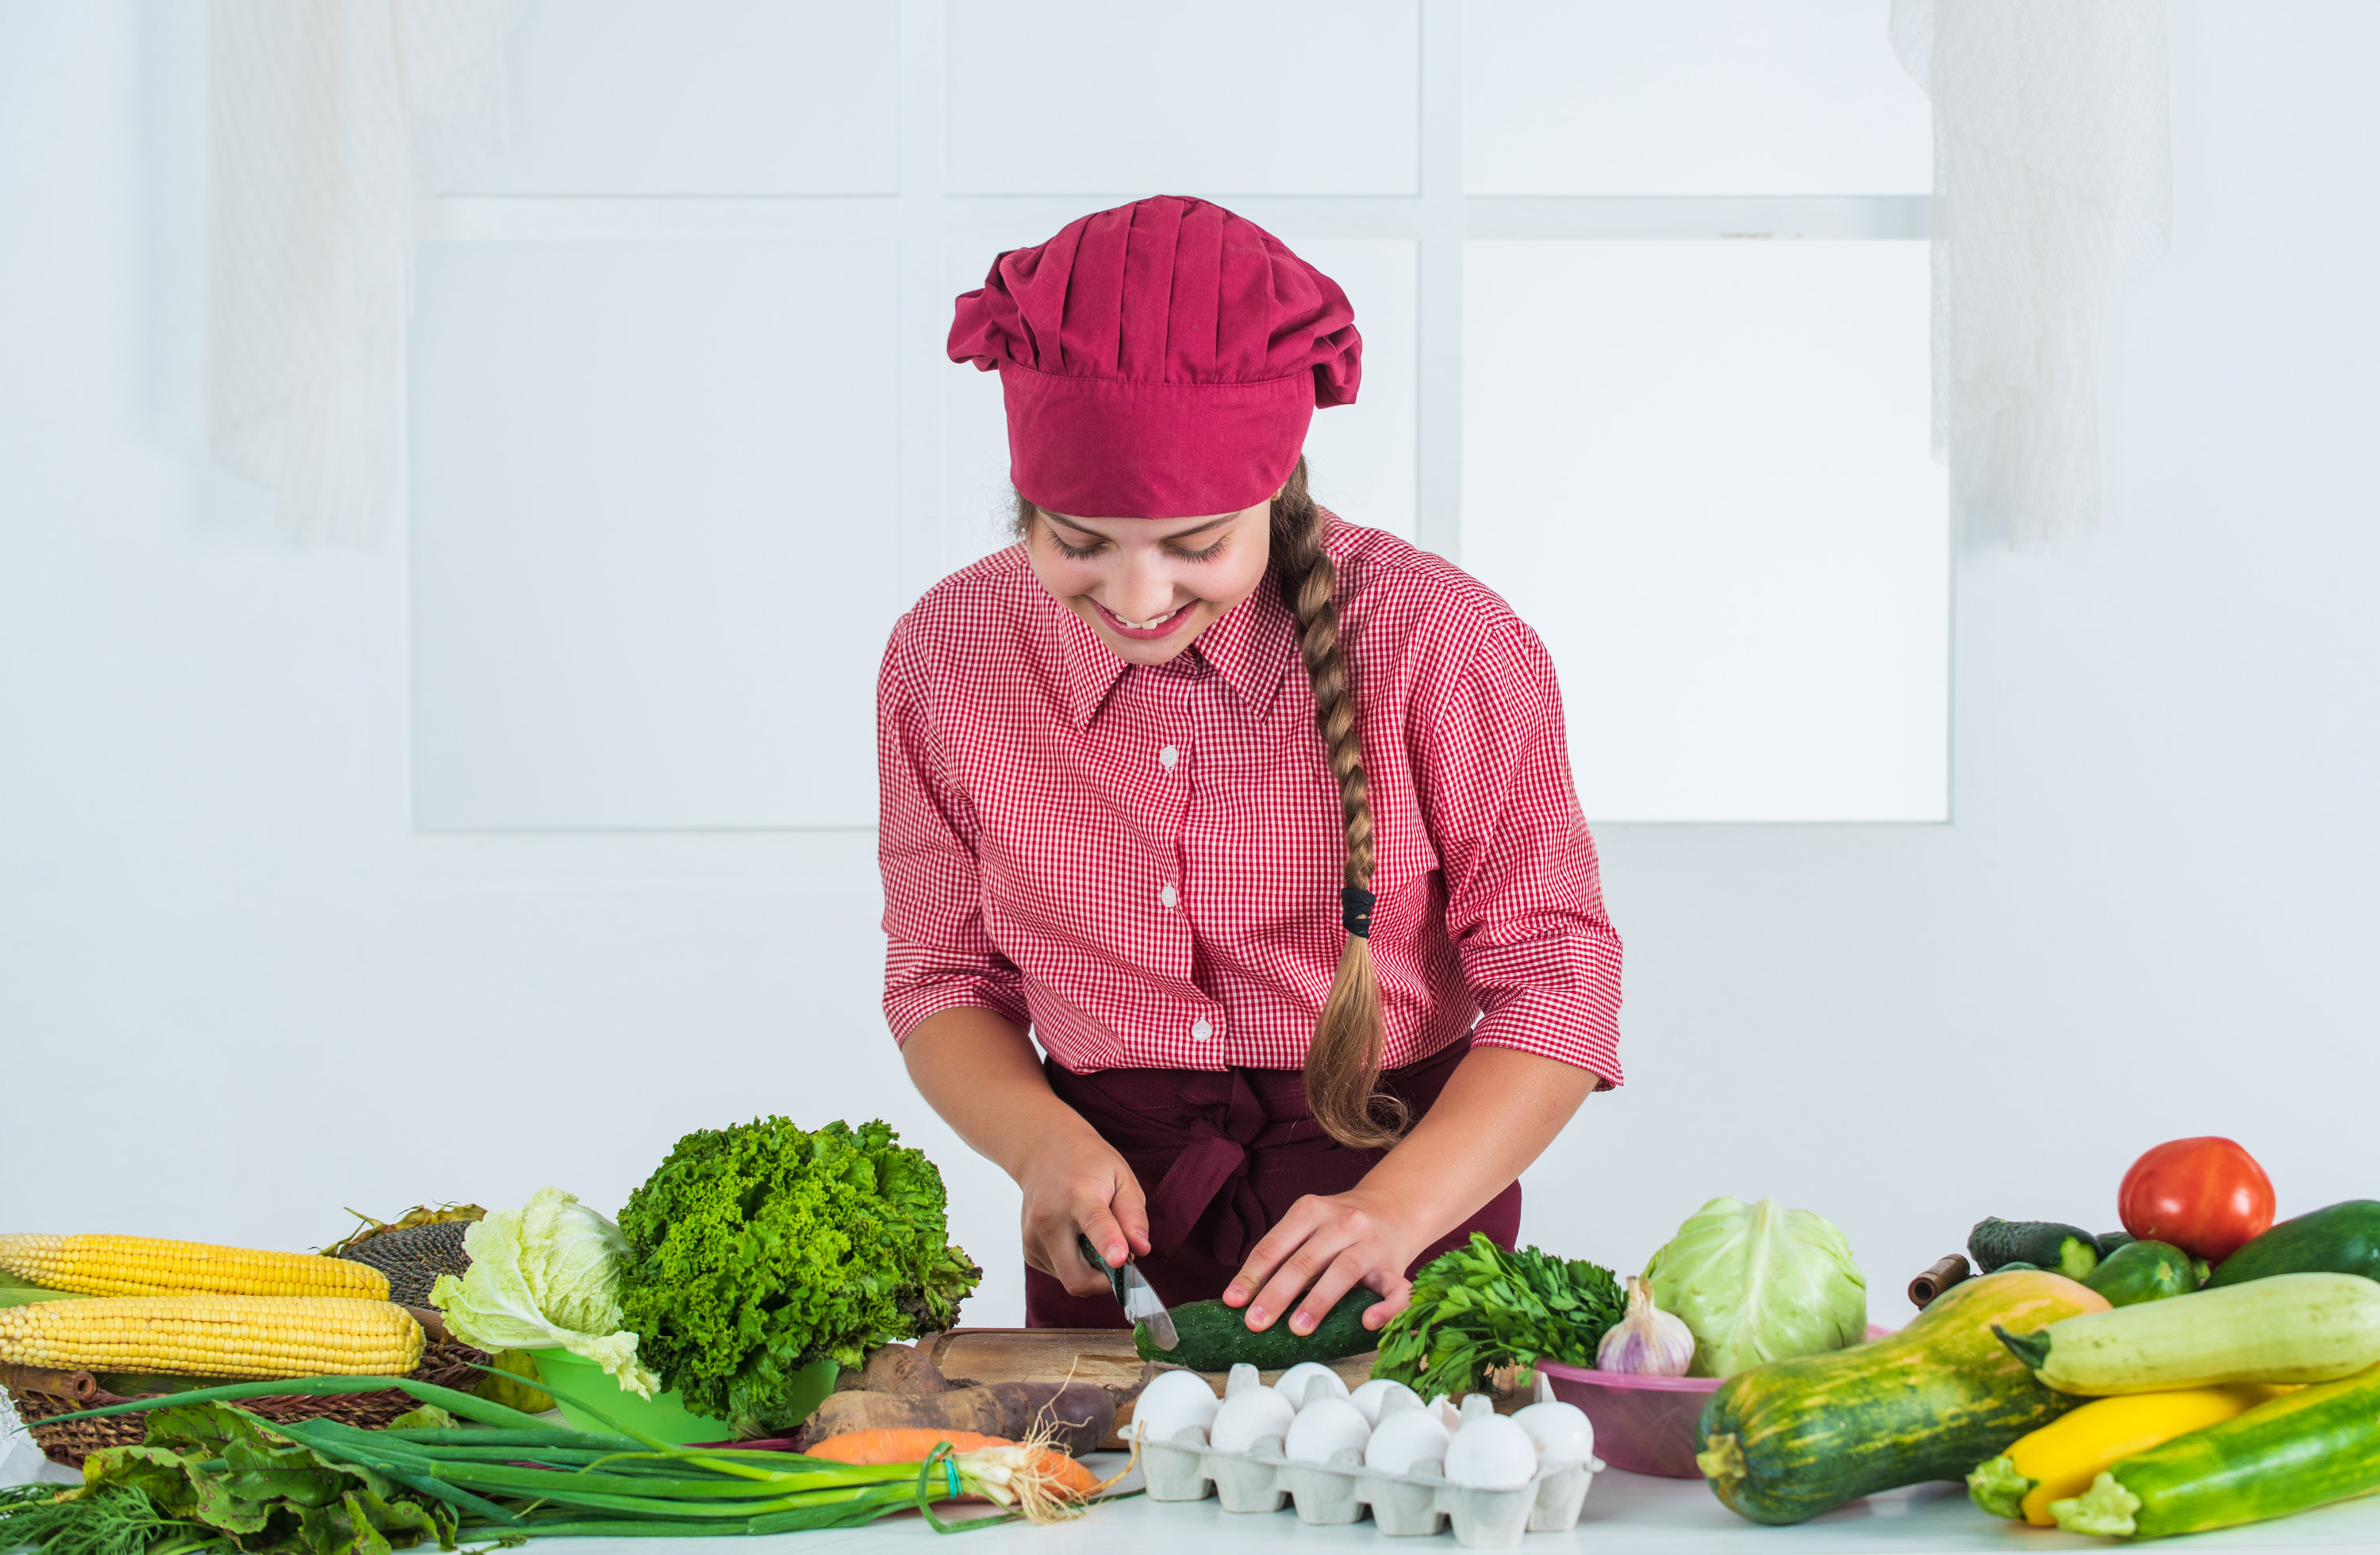 A chef cutting veggies